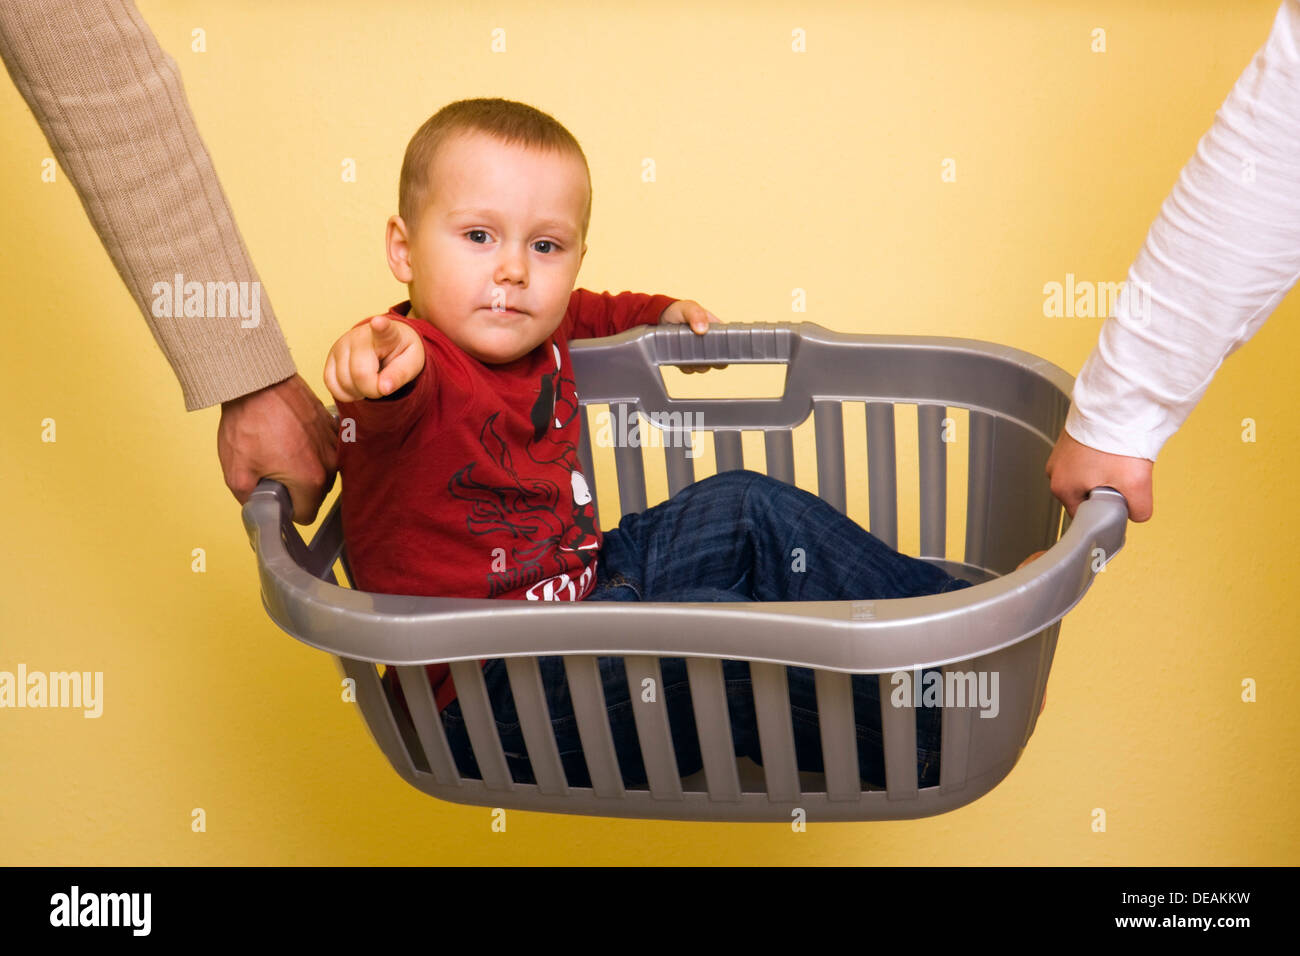 Junge, 2 Jahre, durchgeführt in einen Wäschekorb Stockfoto